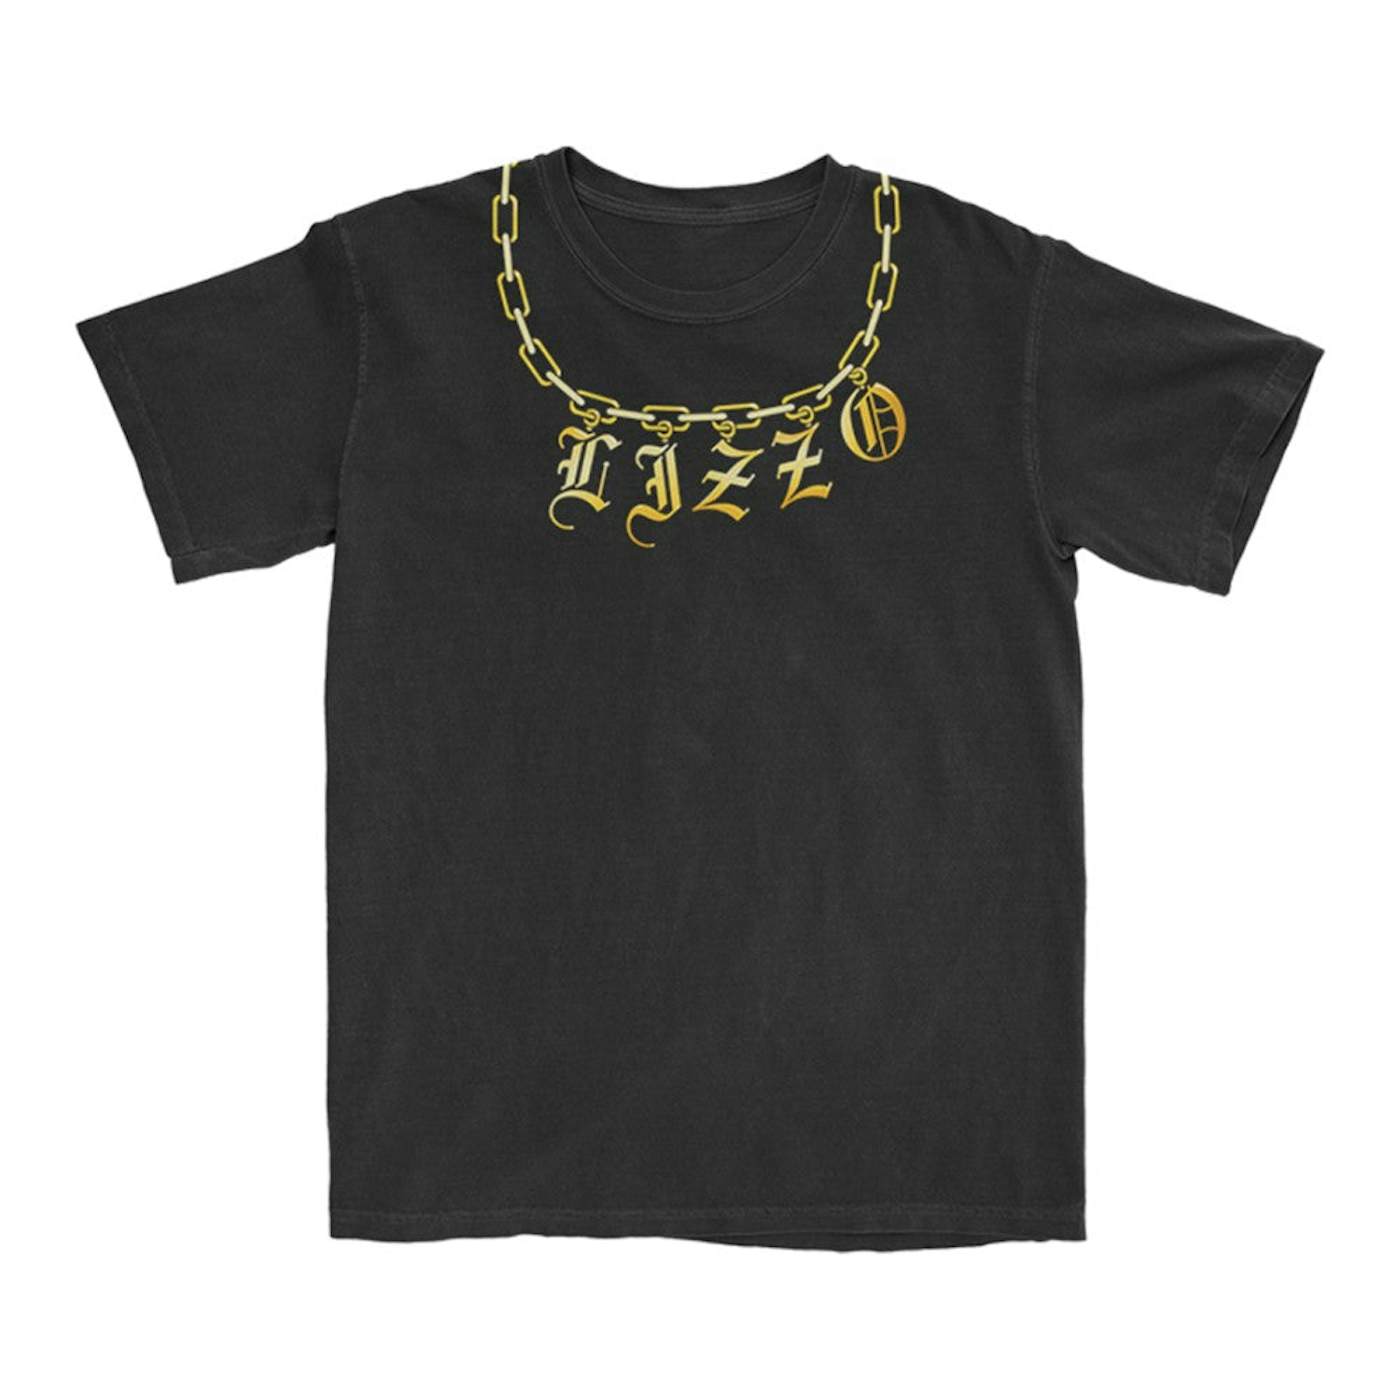 Lizzo Chain T-Shirt